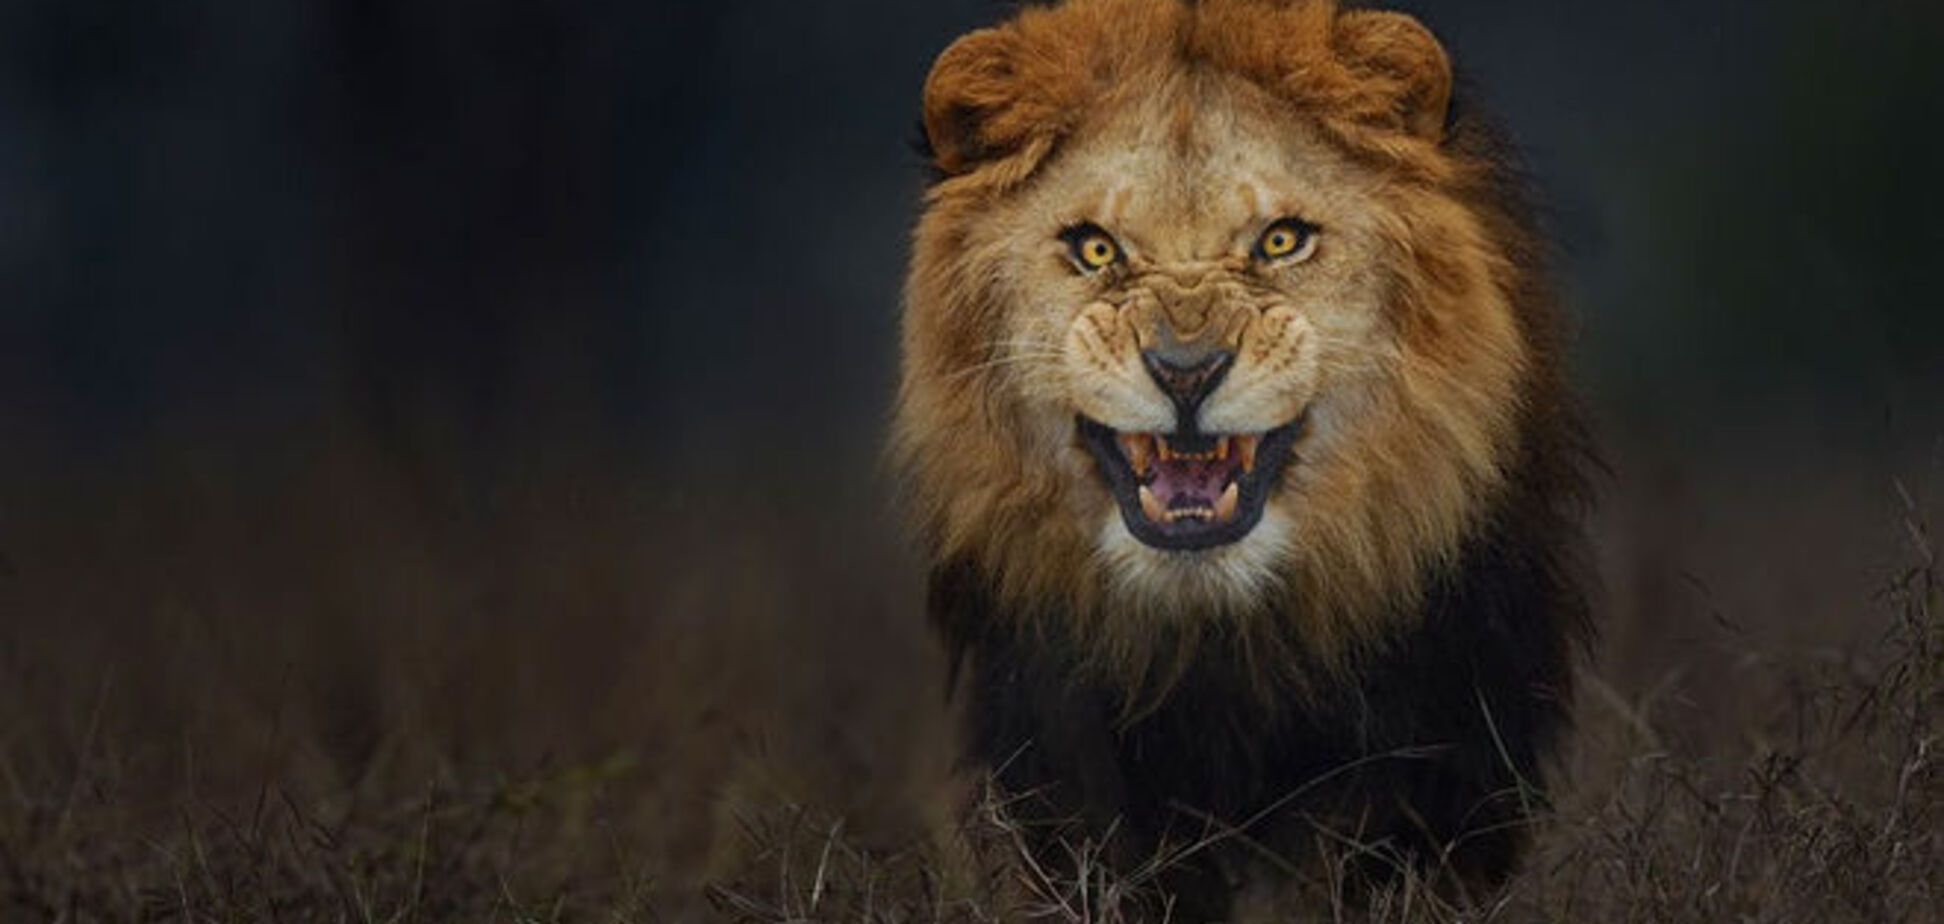 Уникальное фото: за секунду до прыжка льва на фотографа